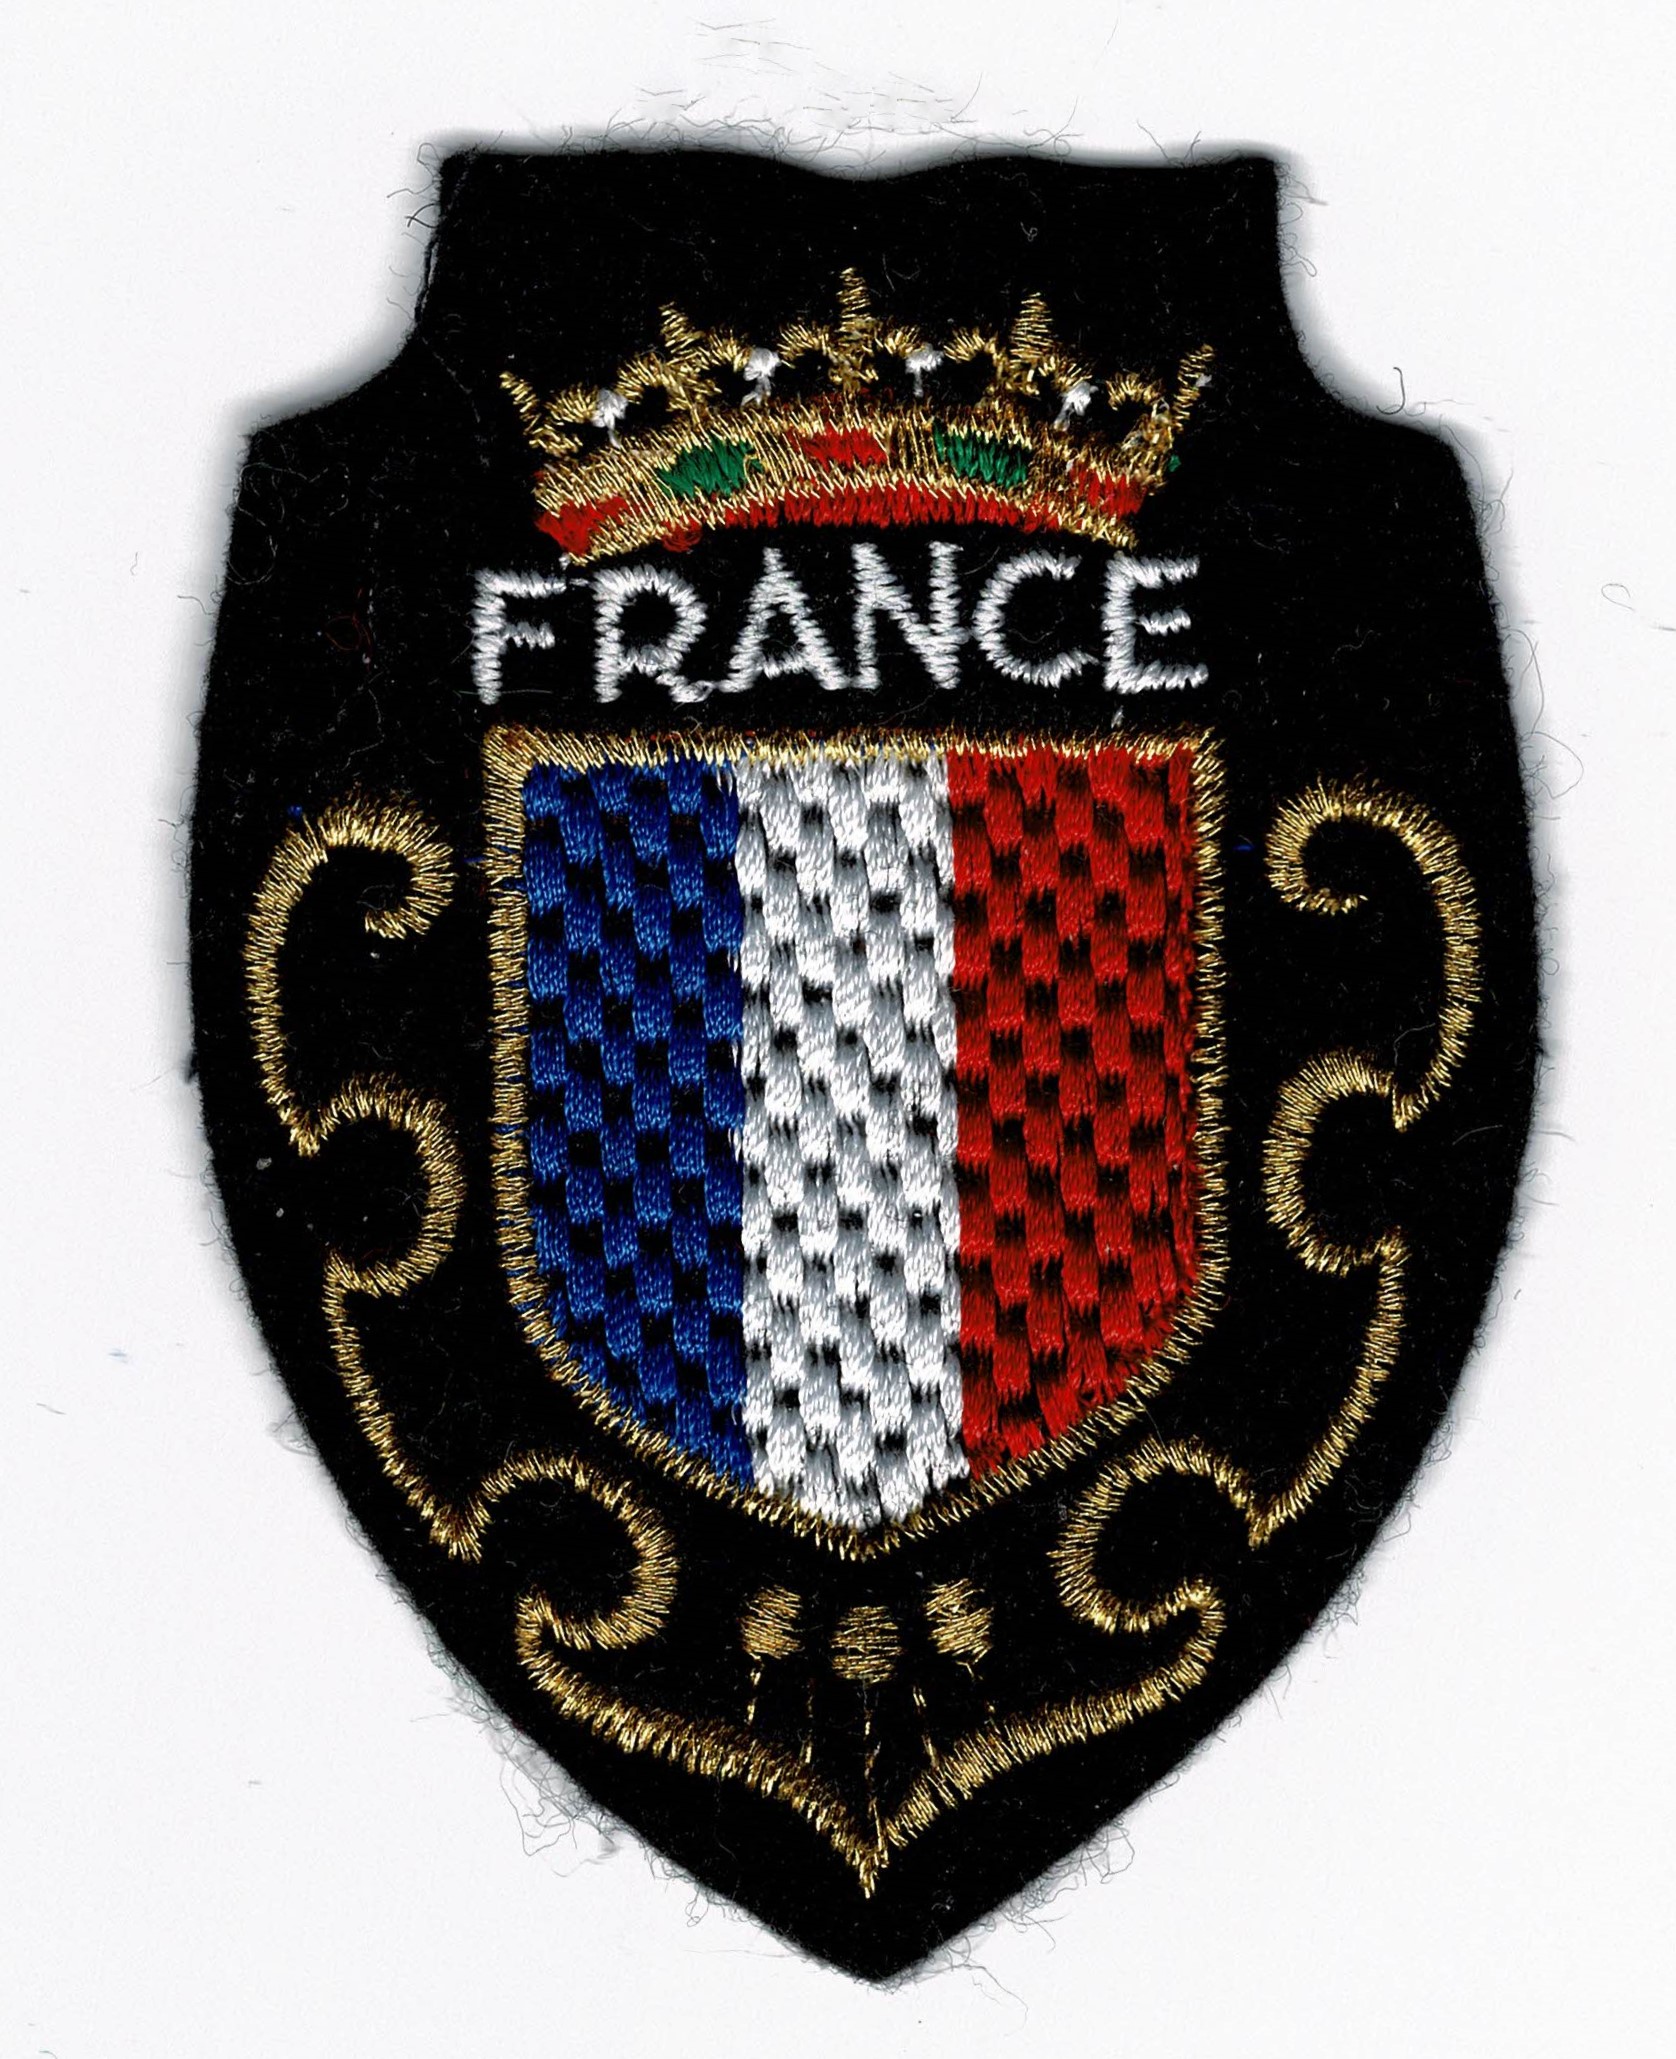 écusson drapeau France - Intermercerie